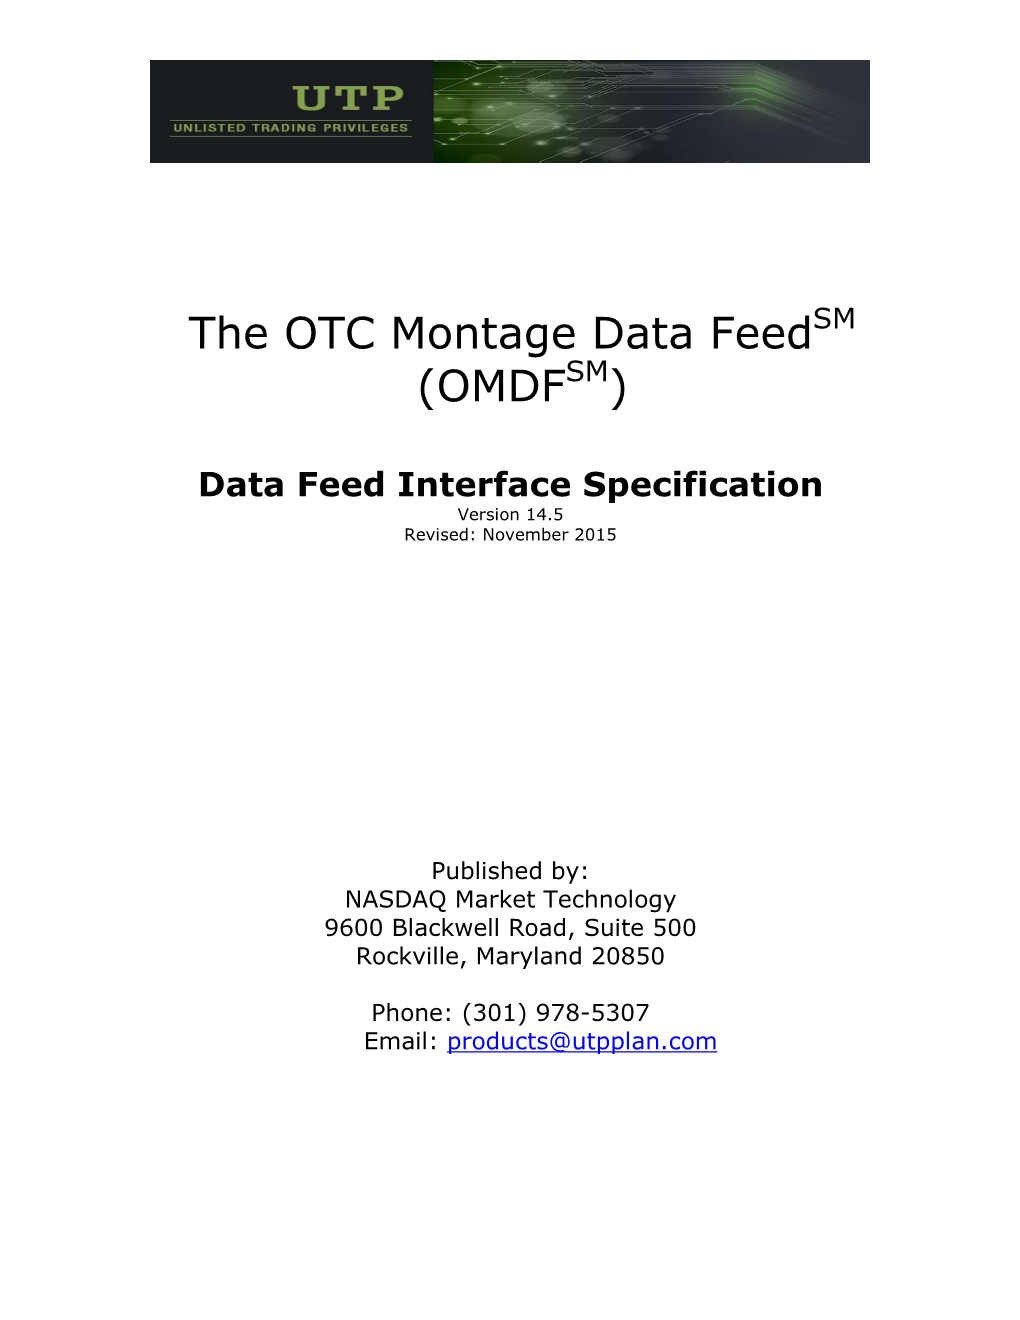 OTC Montage Data Feedsm (OMDFSM)